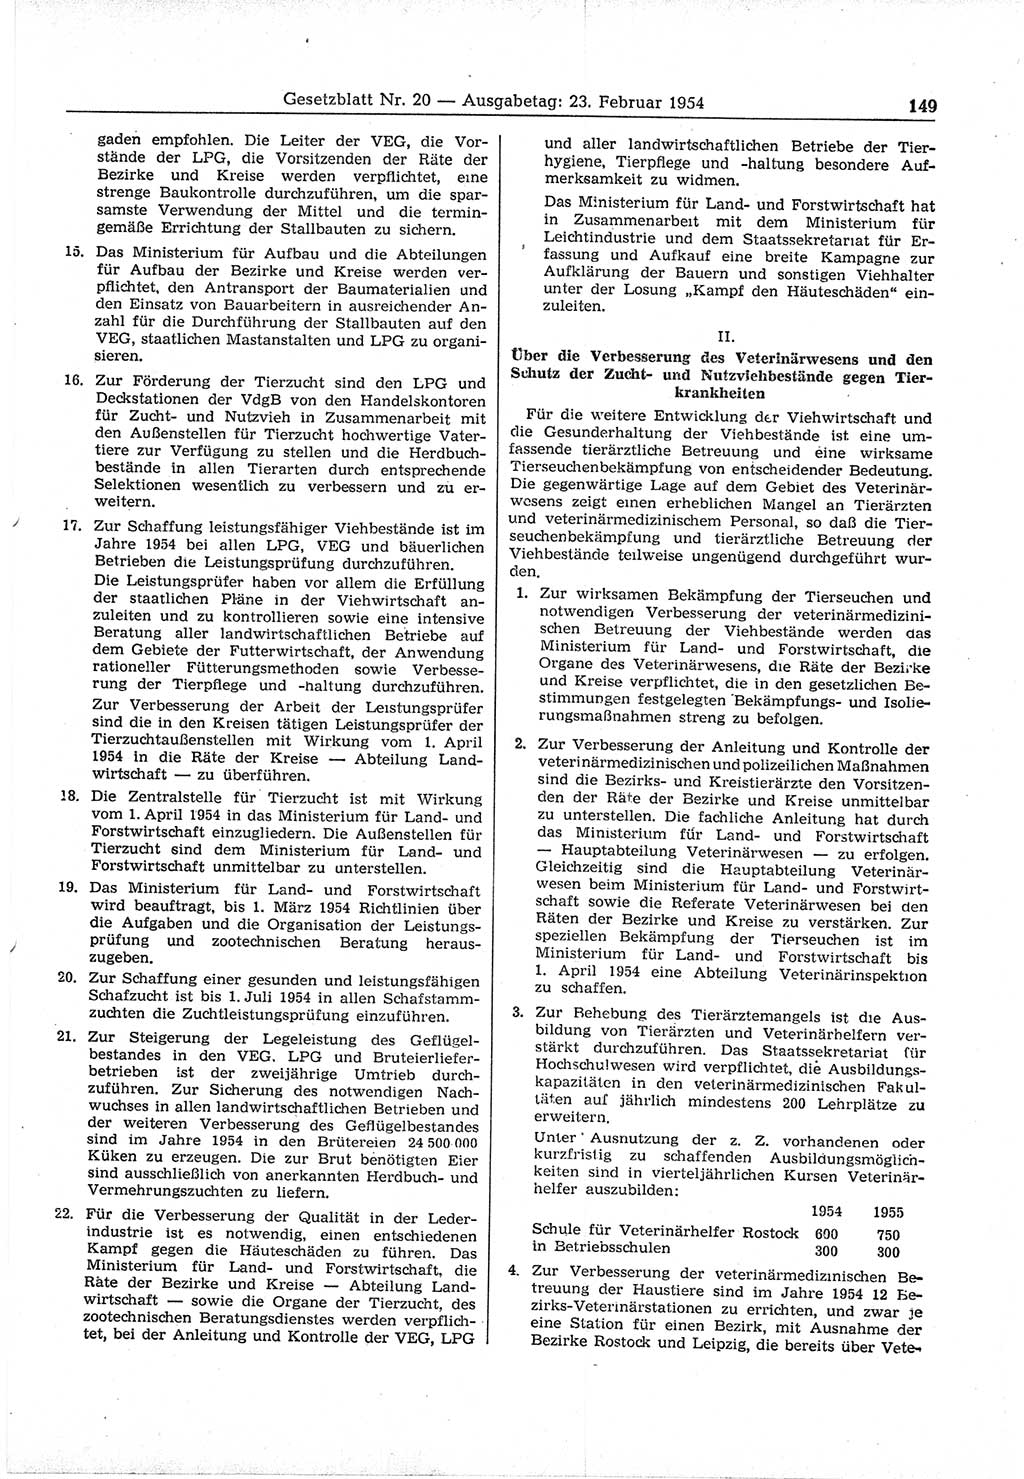 Gesetzblatt (GBl.) der Deutschen Demokratischen Republik (DDR) 1954, Seite 149 (GBl. DDR 1954, S. 149)